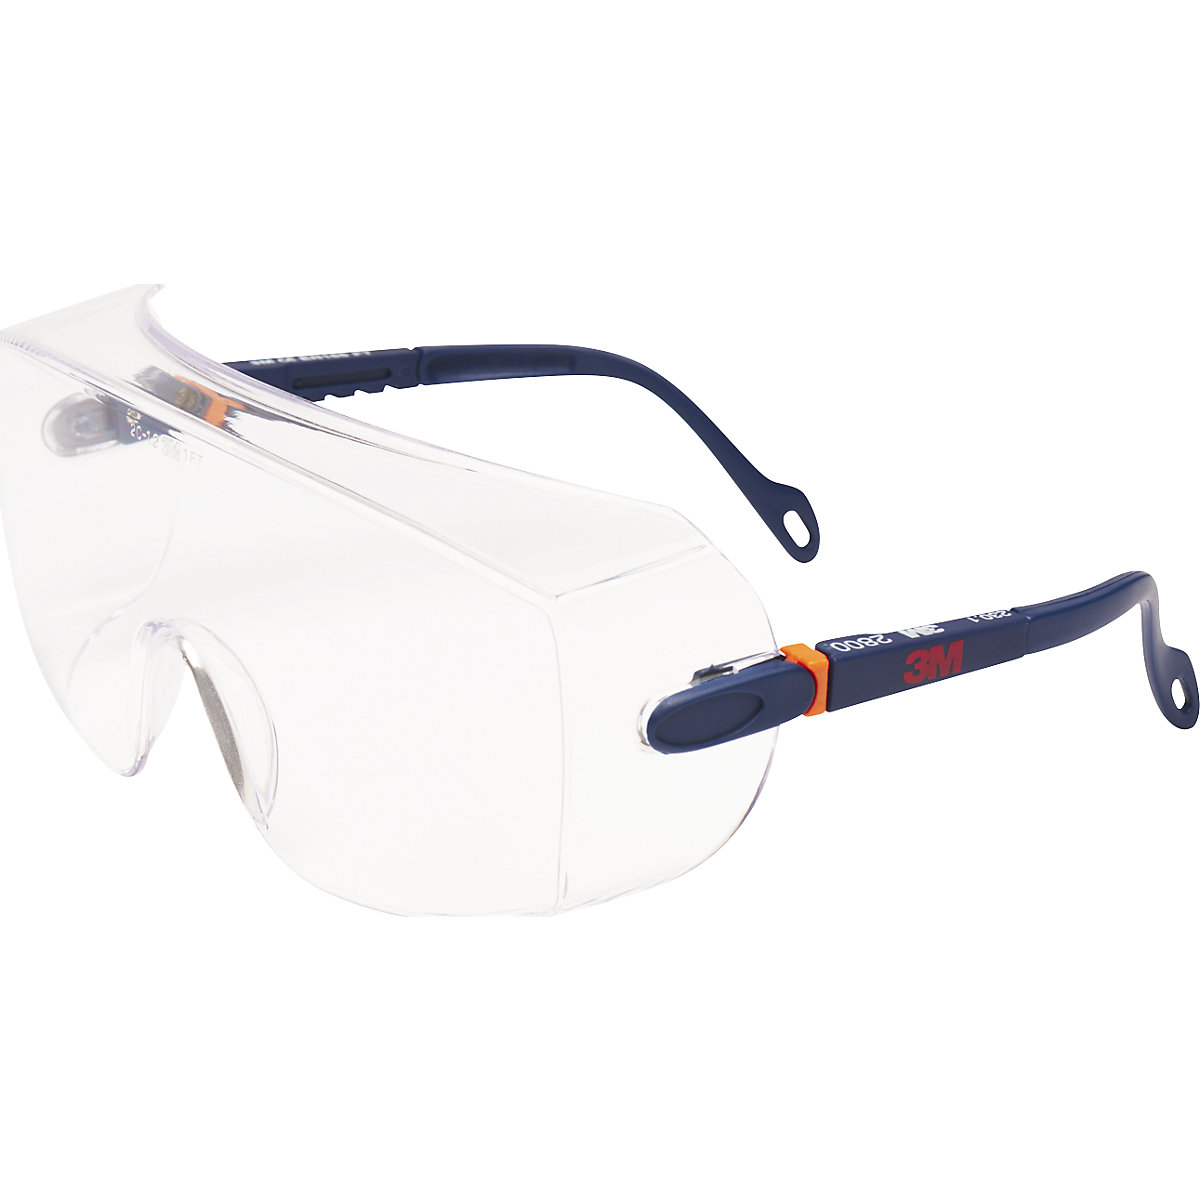 Látásjavító szemüveg felett hordható védőszemüveg, 2800 – 3M